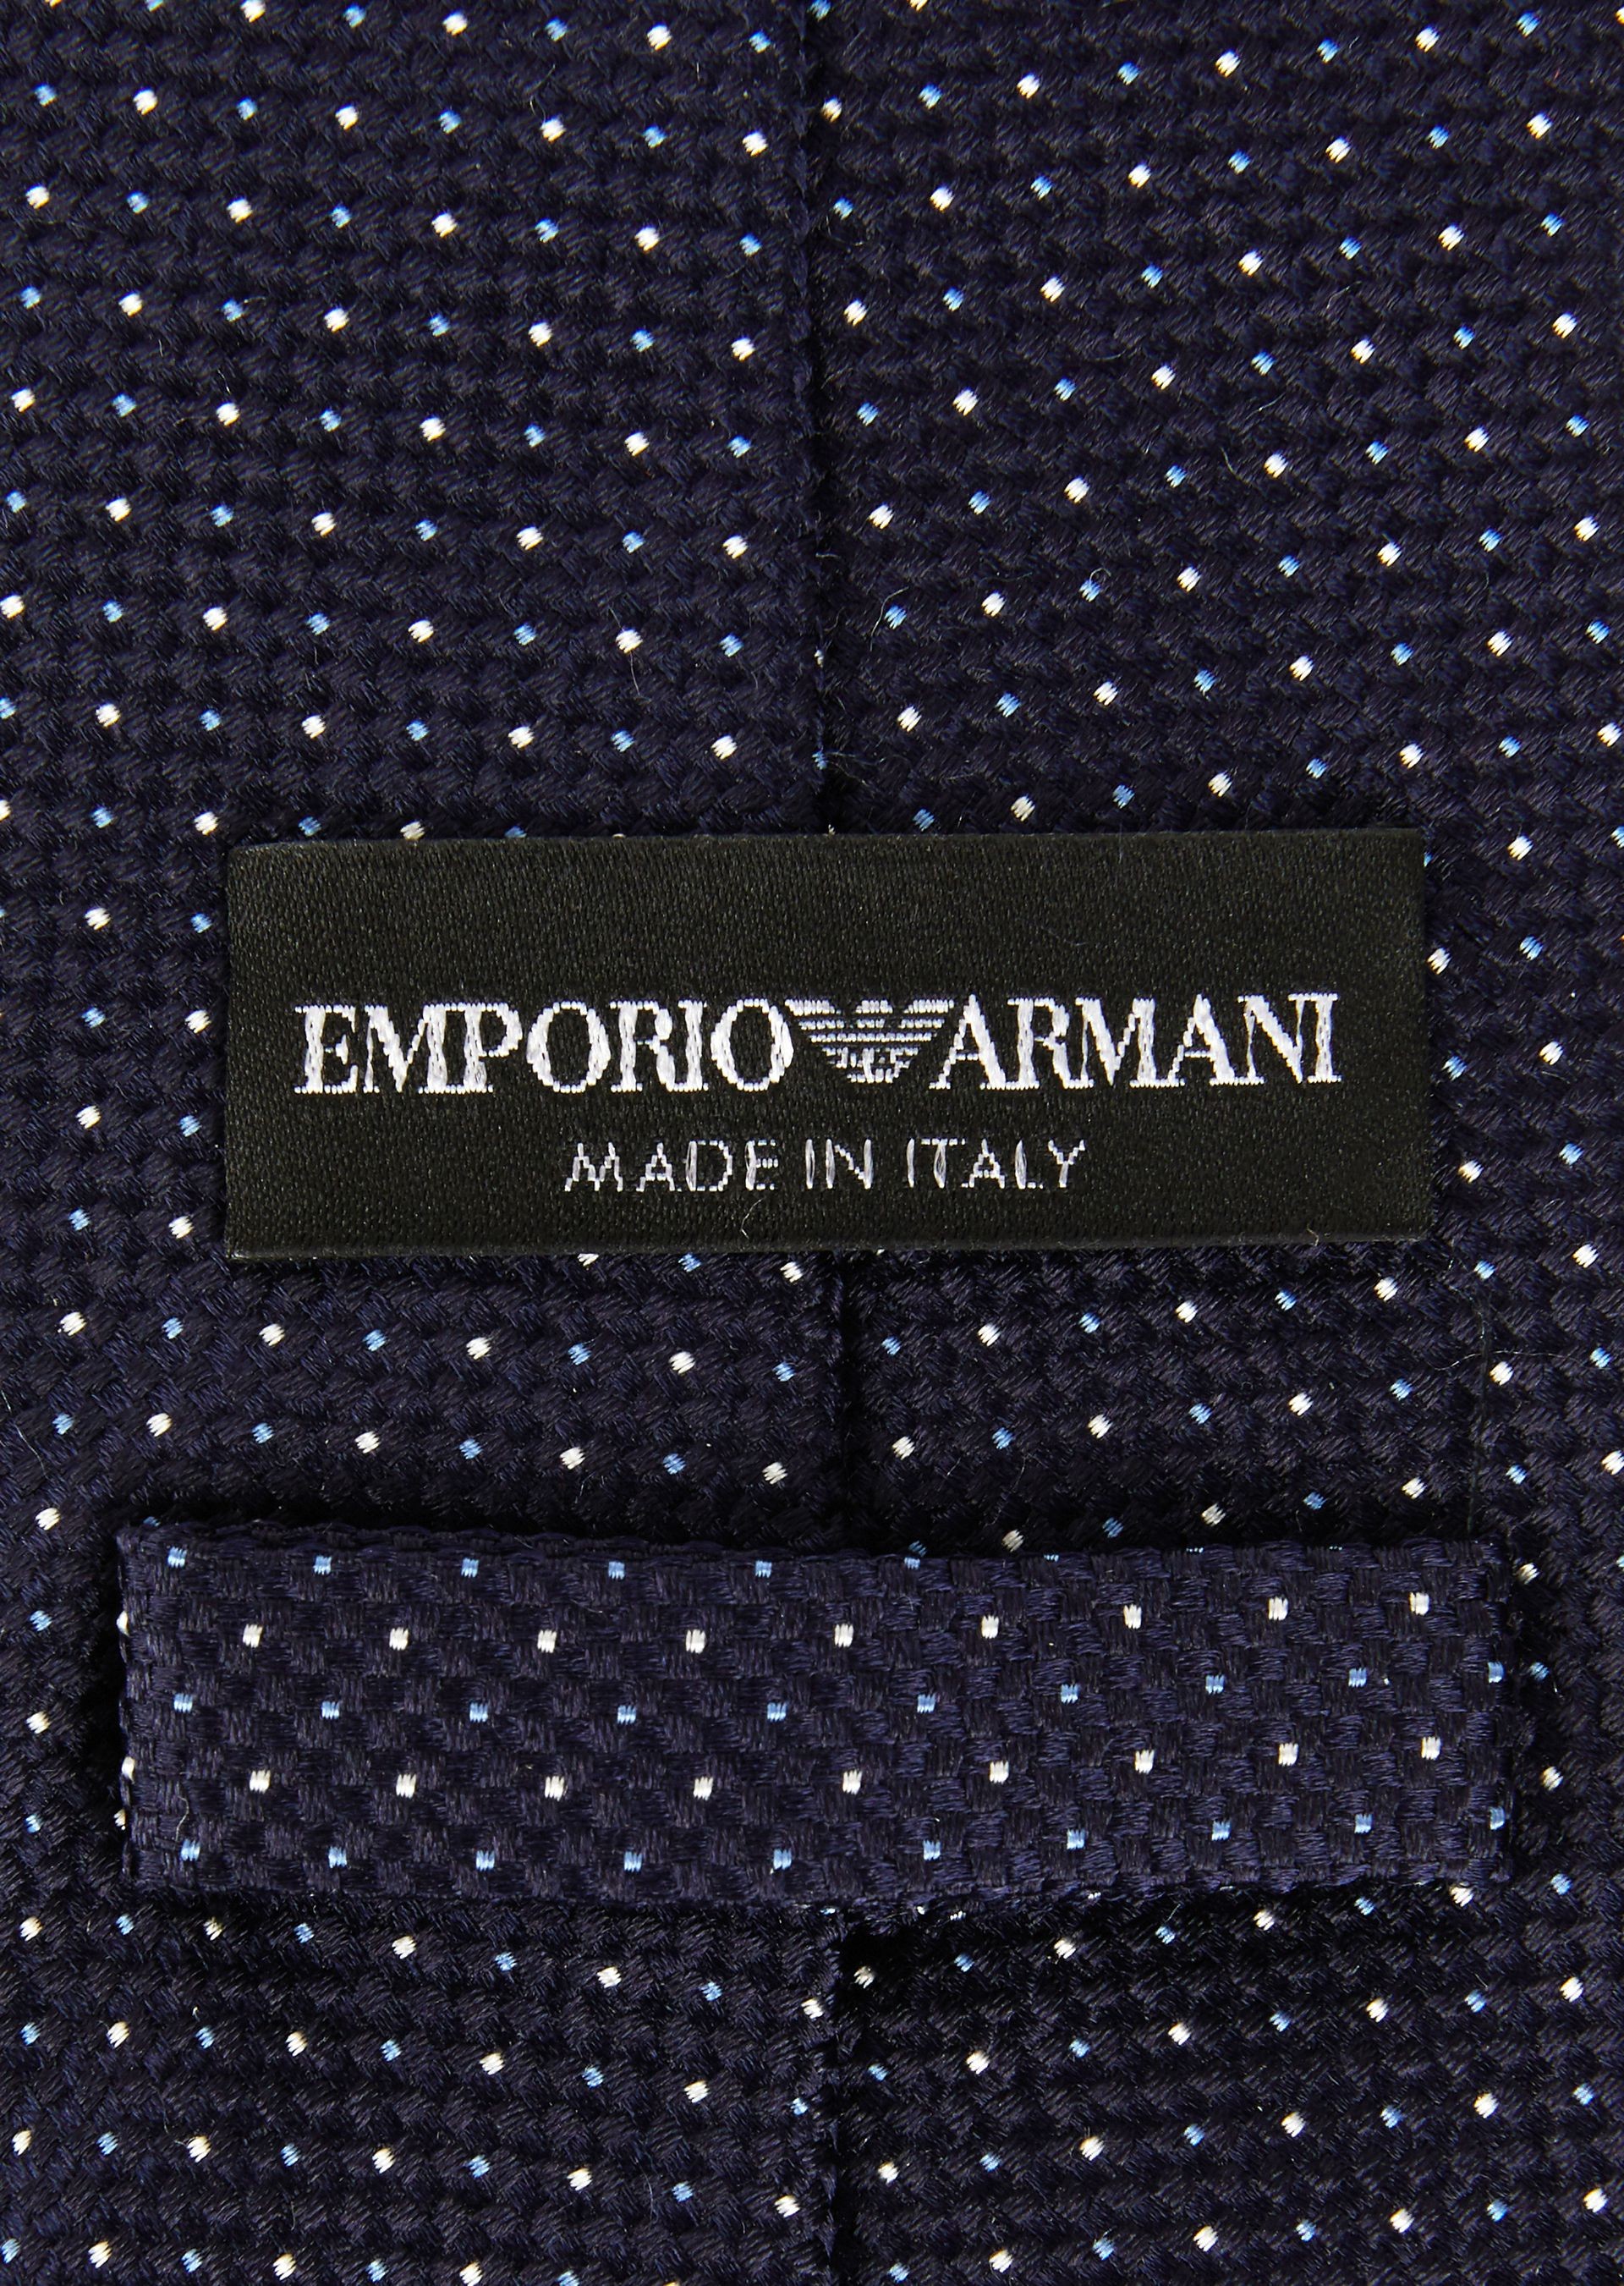 Emporio Armani Cravatta In Seta Micro Pois  3401828P307100036 - Nuova Collezione Primavera Estate 2018